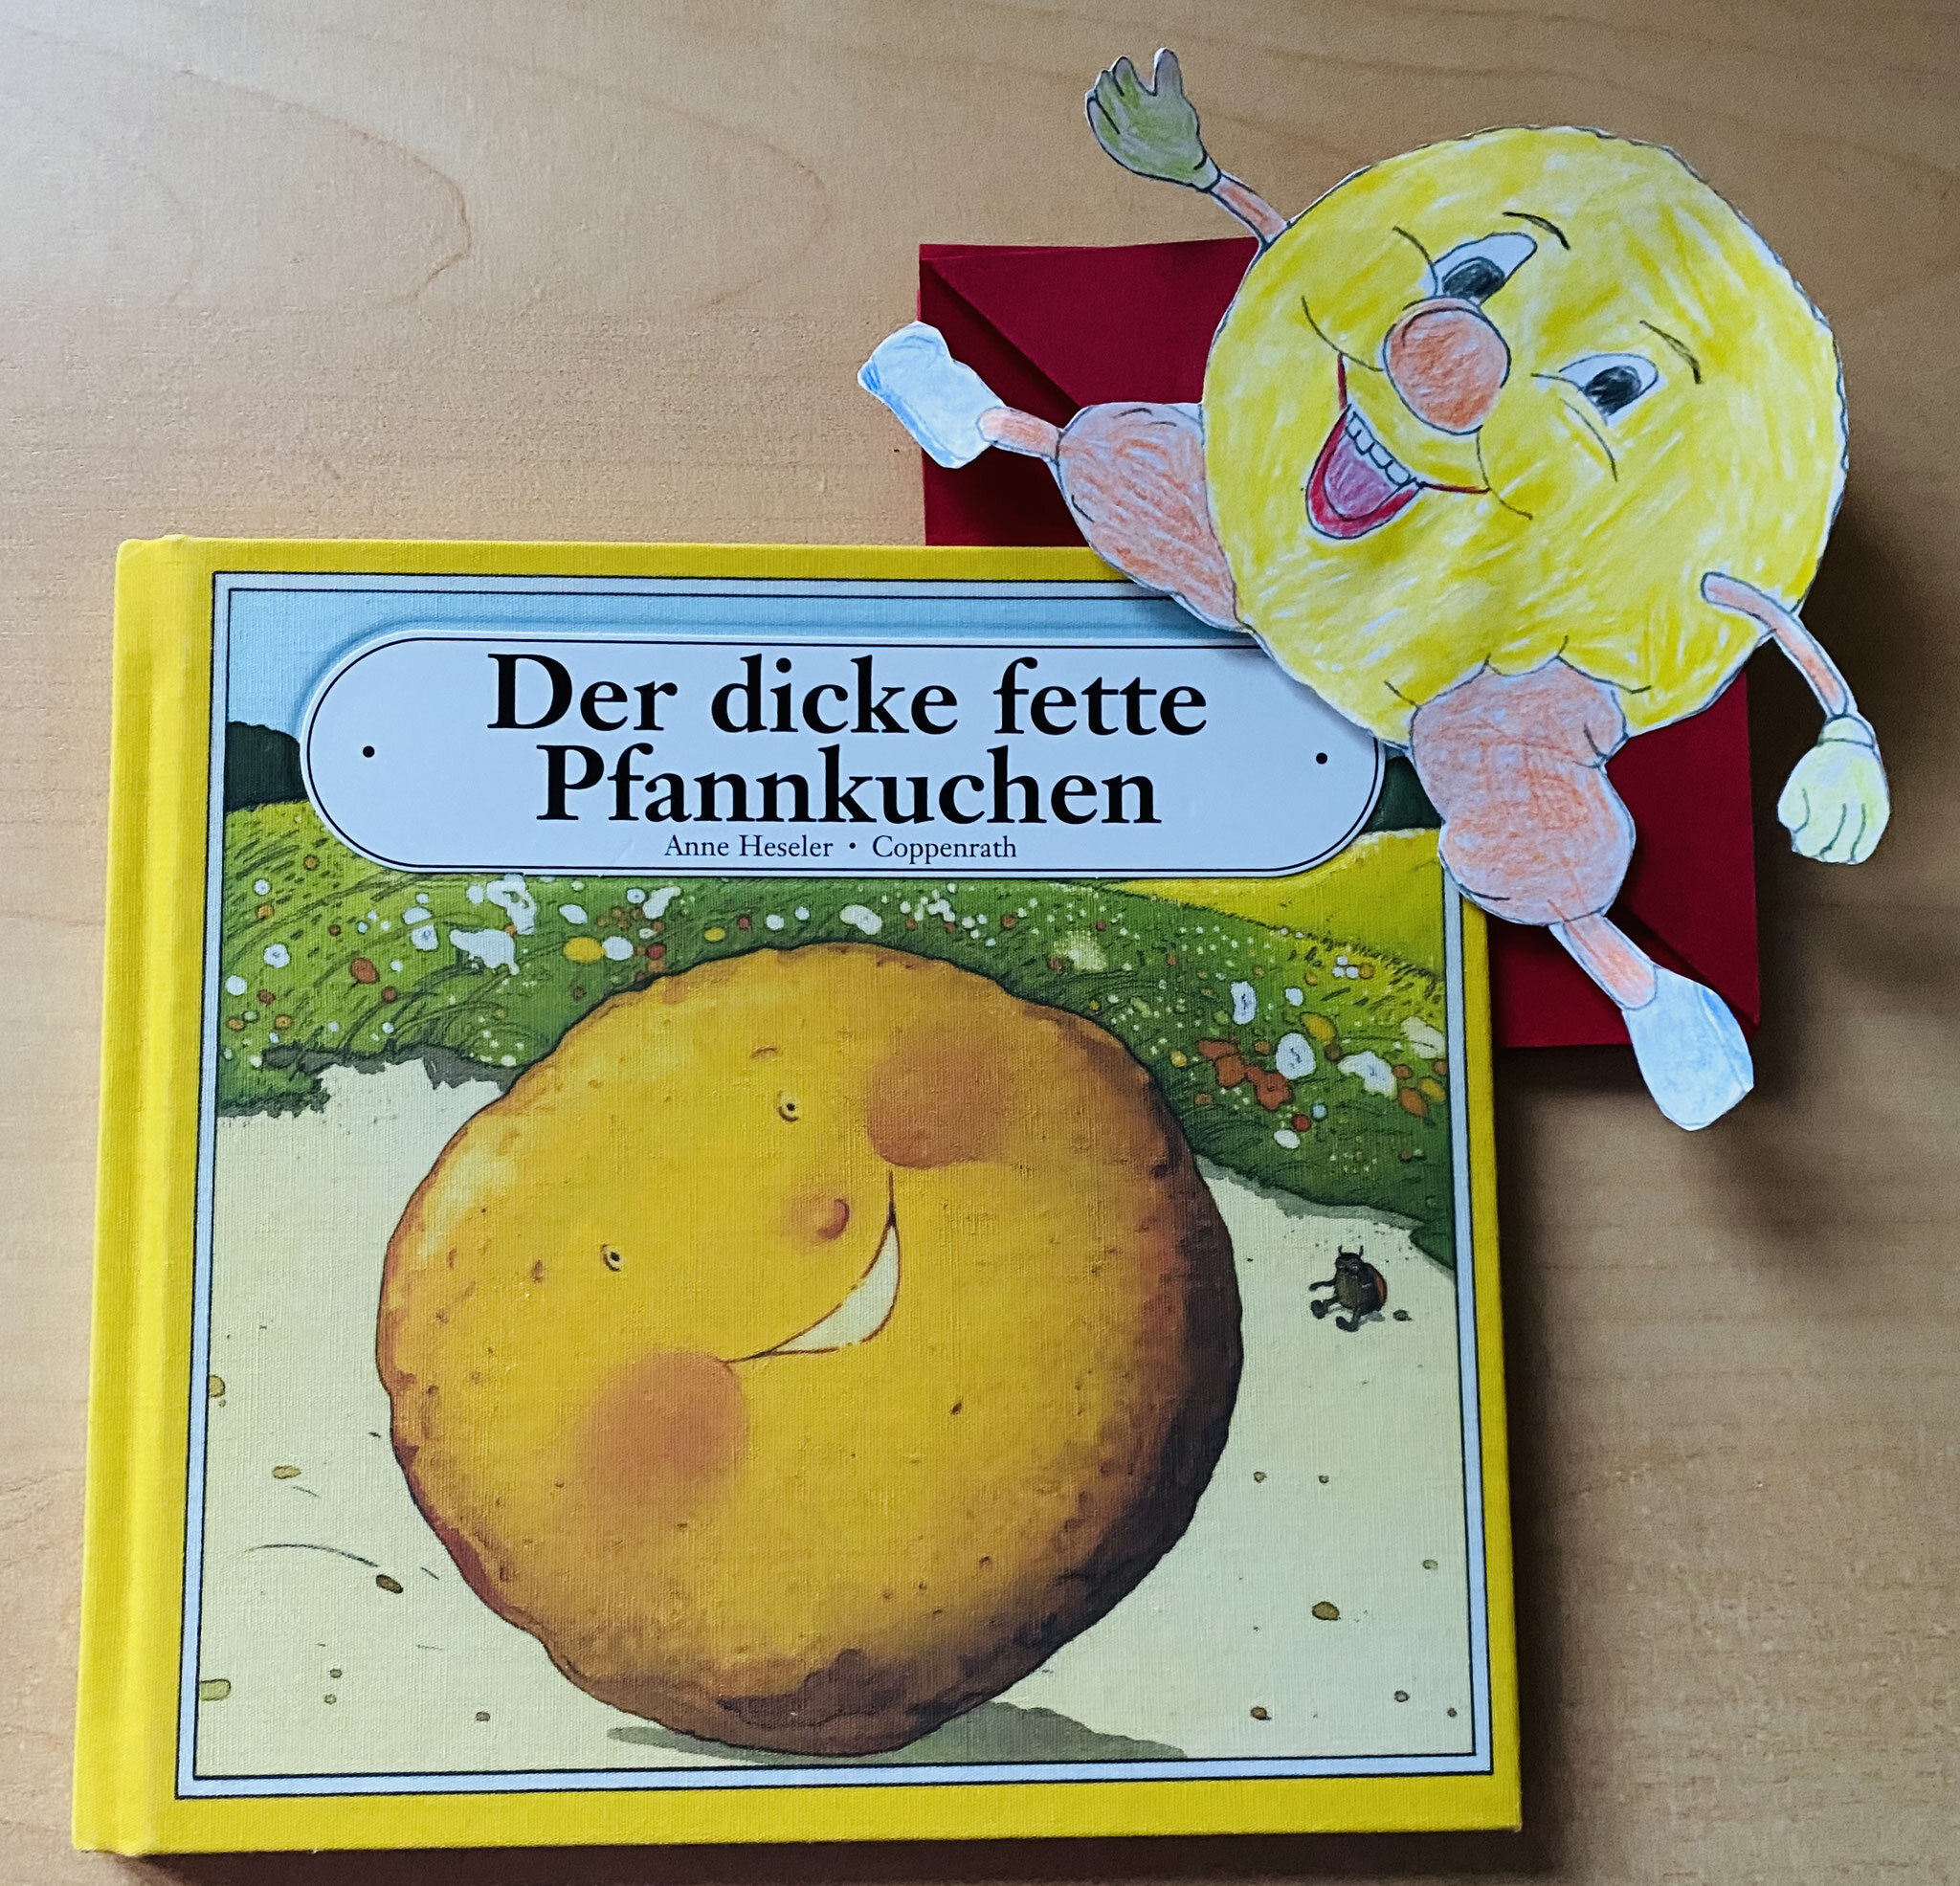  Buch der dicke, fette Pfannkuchen mit passendem Lesezeichen 